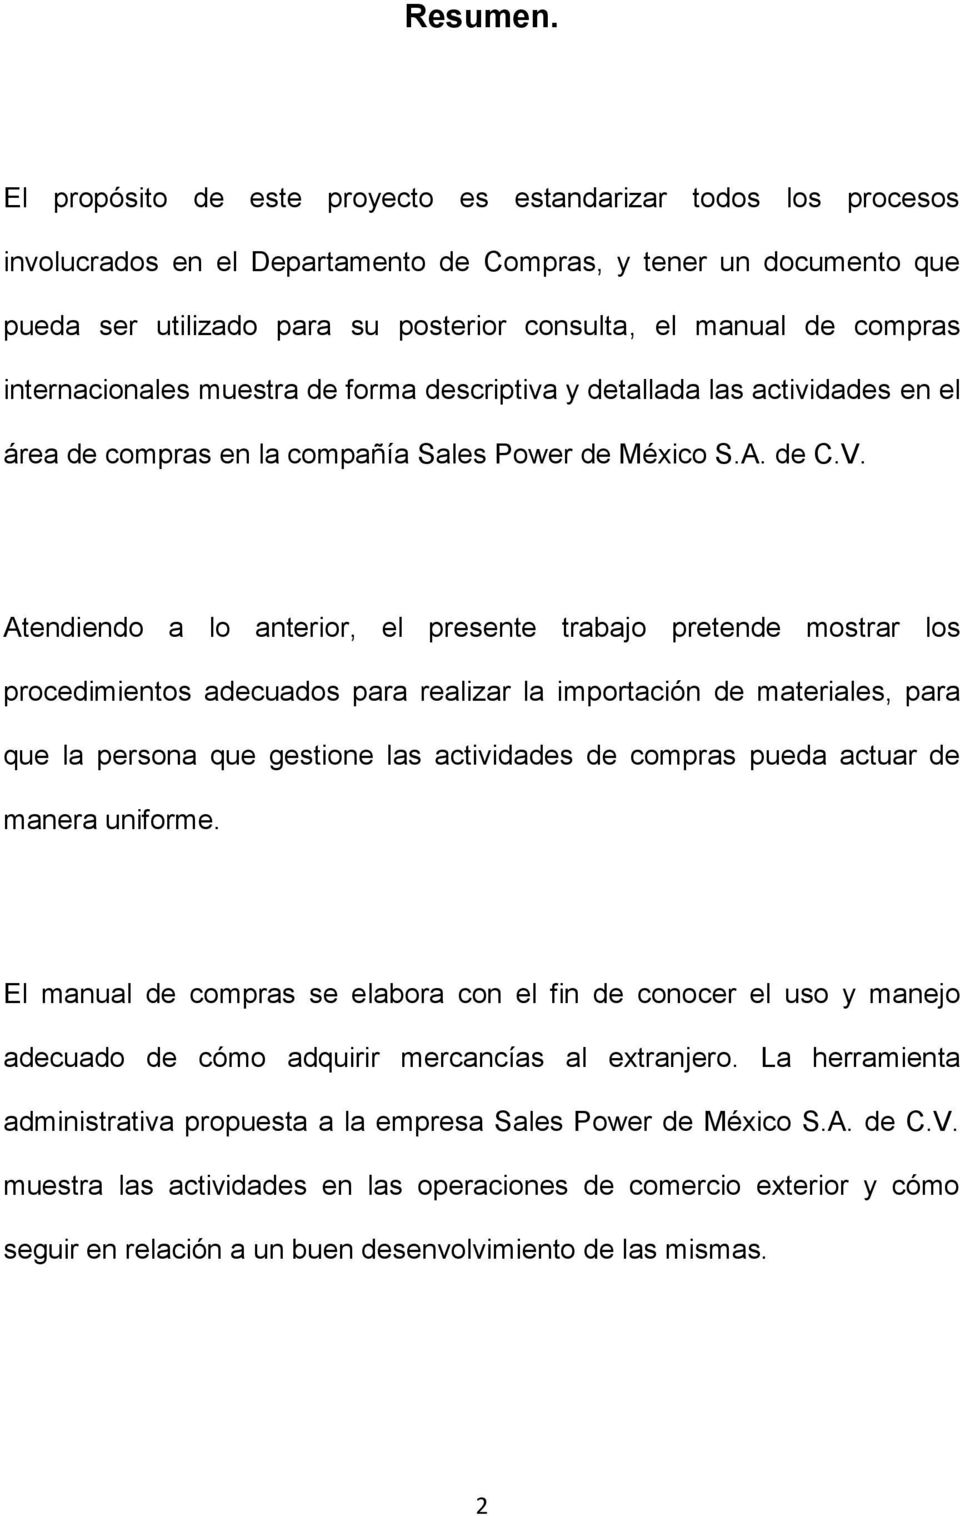 compras internacionales muestra de forma descriptiva y detallada las actividades en el área de compras en la compañía Sales Power de México S.A. de C.V.